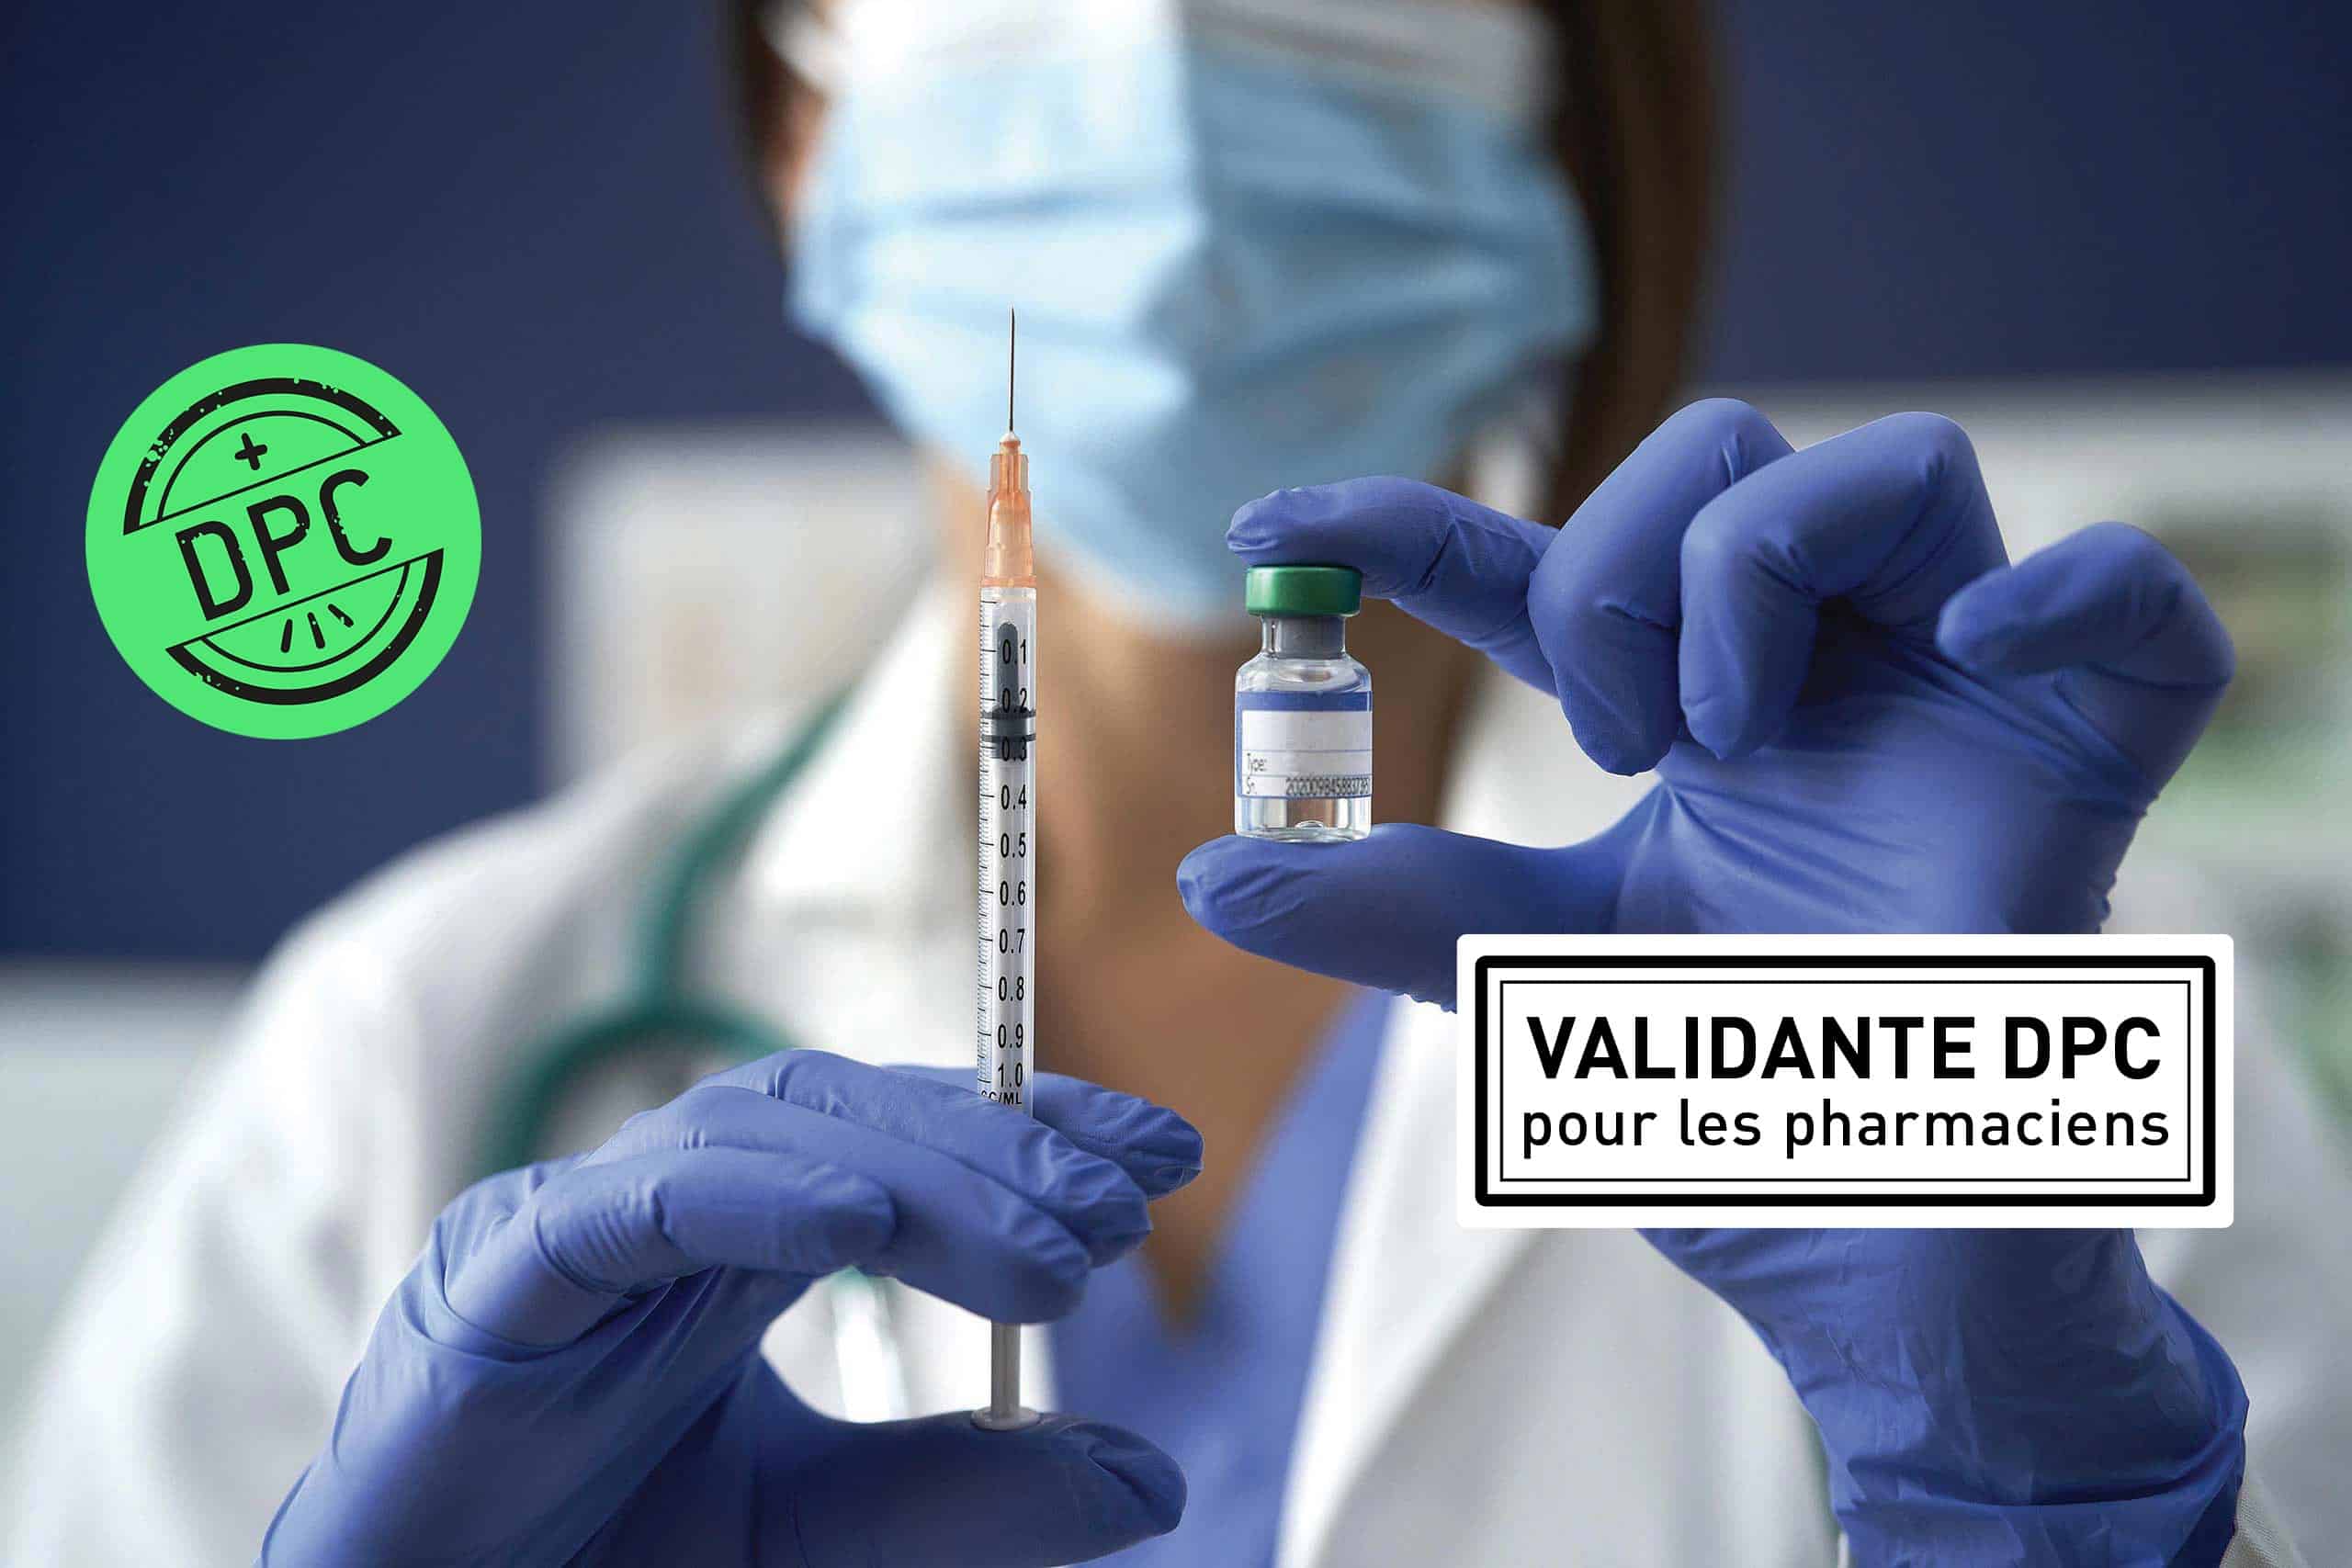 Formation Vaccination, nouveau décret validante DPC pharmacien